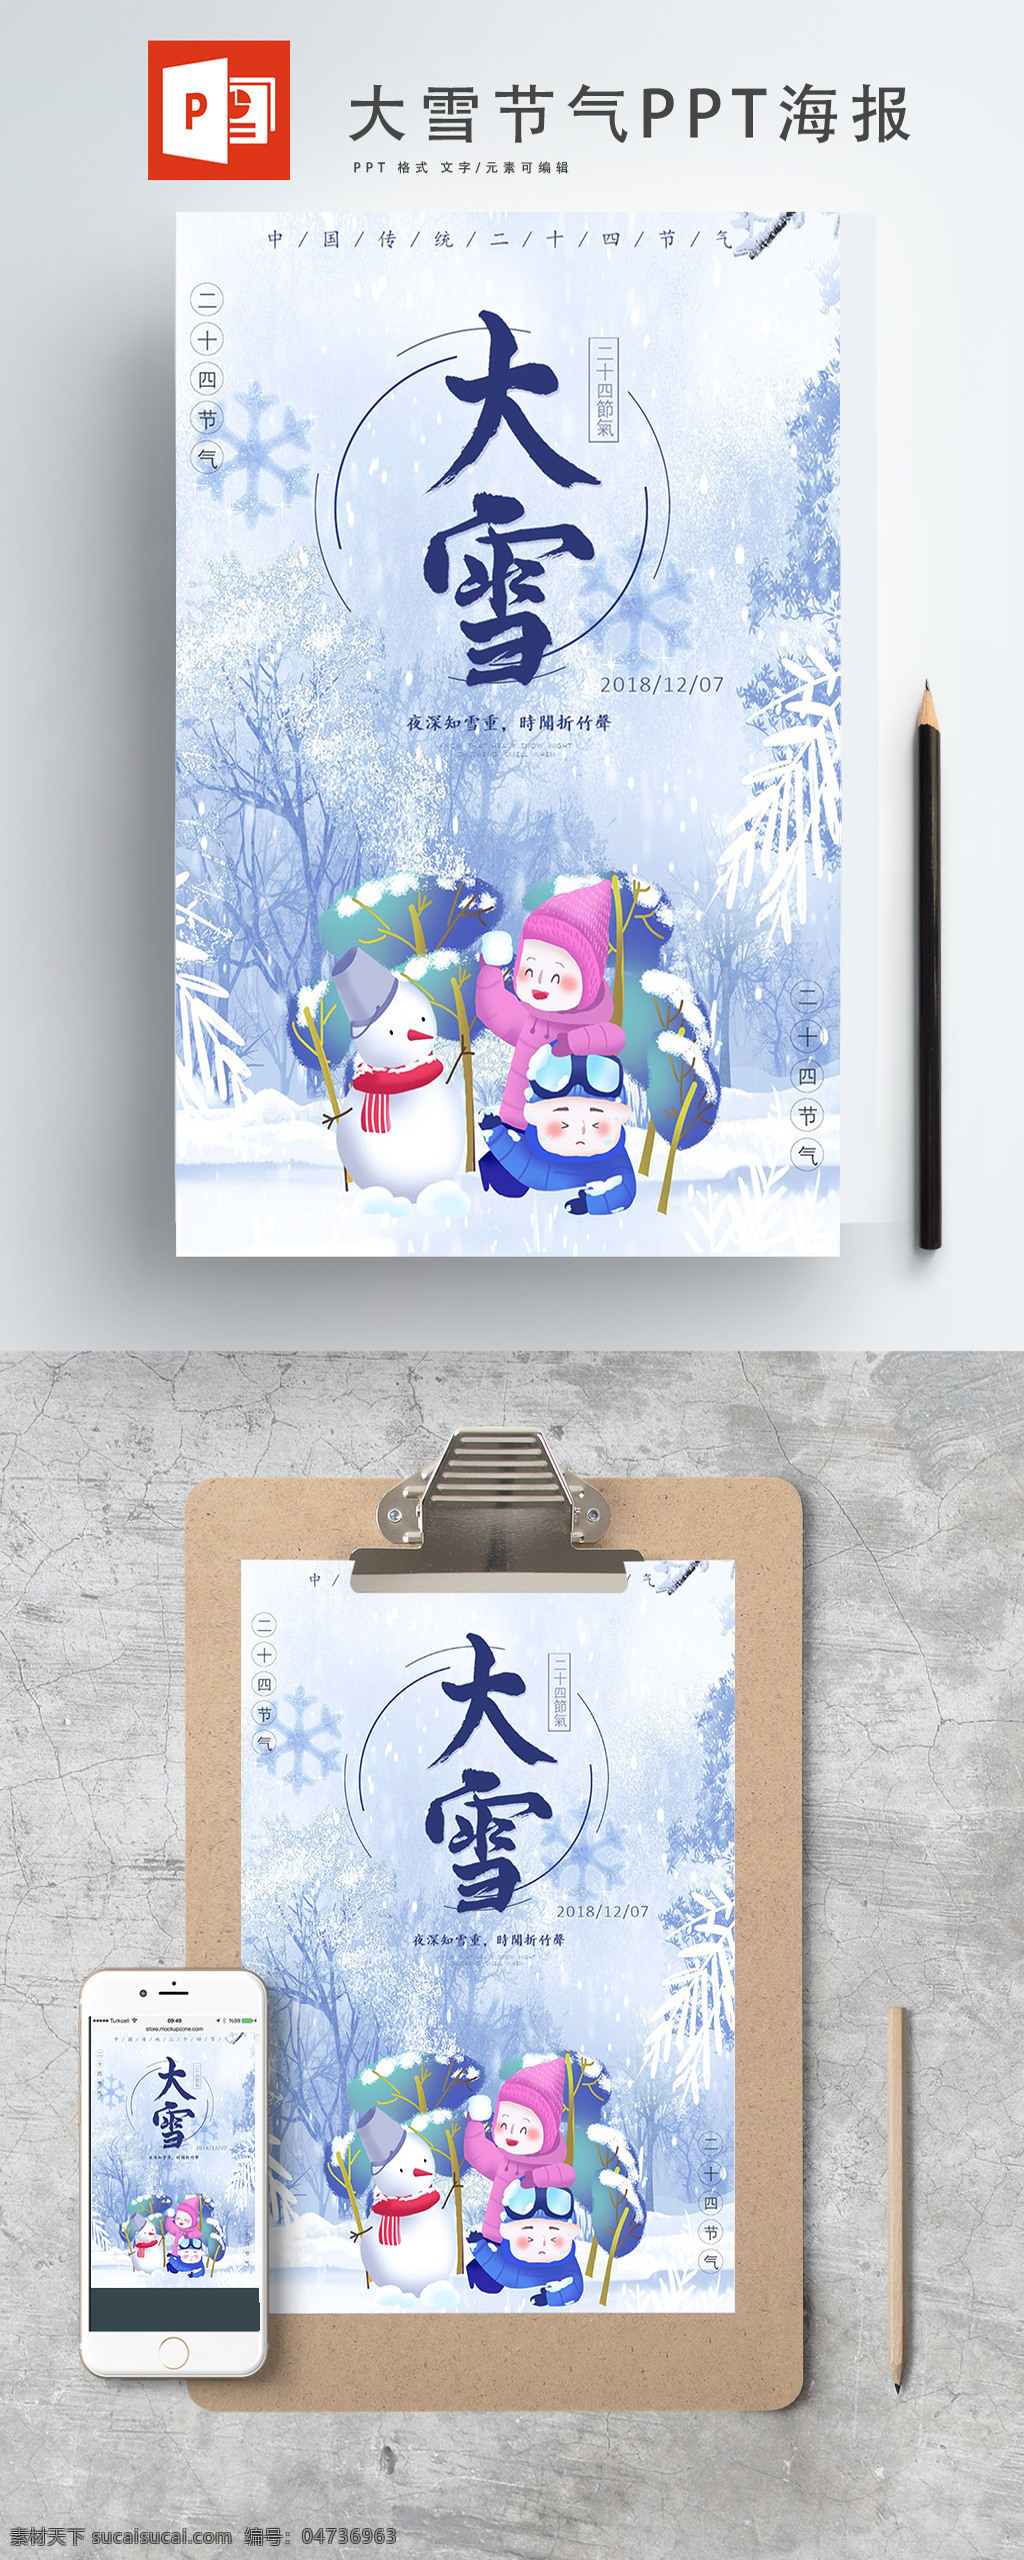 冬季 大雪 节气 海报 大雪节气 ppt海报 简约时尚 卡通